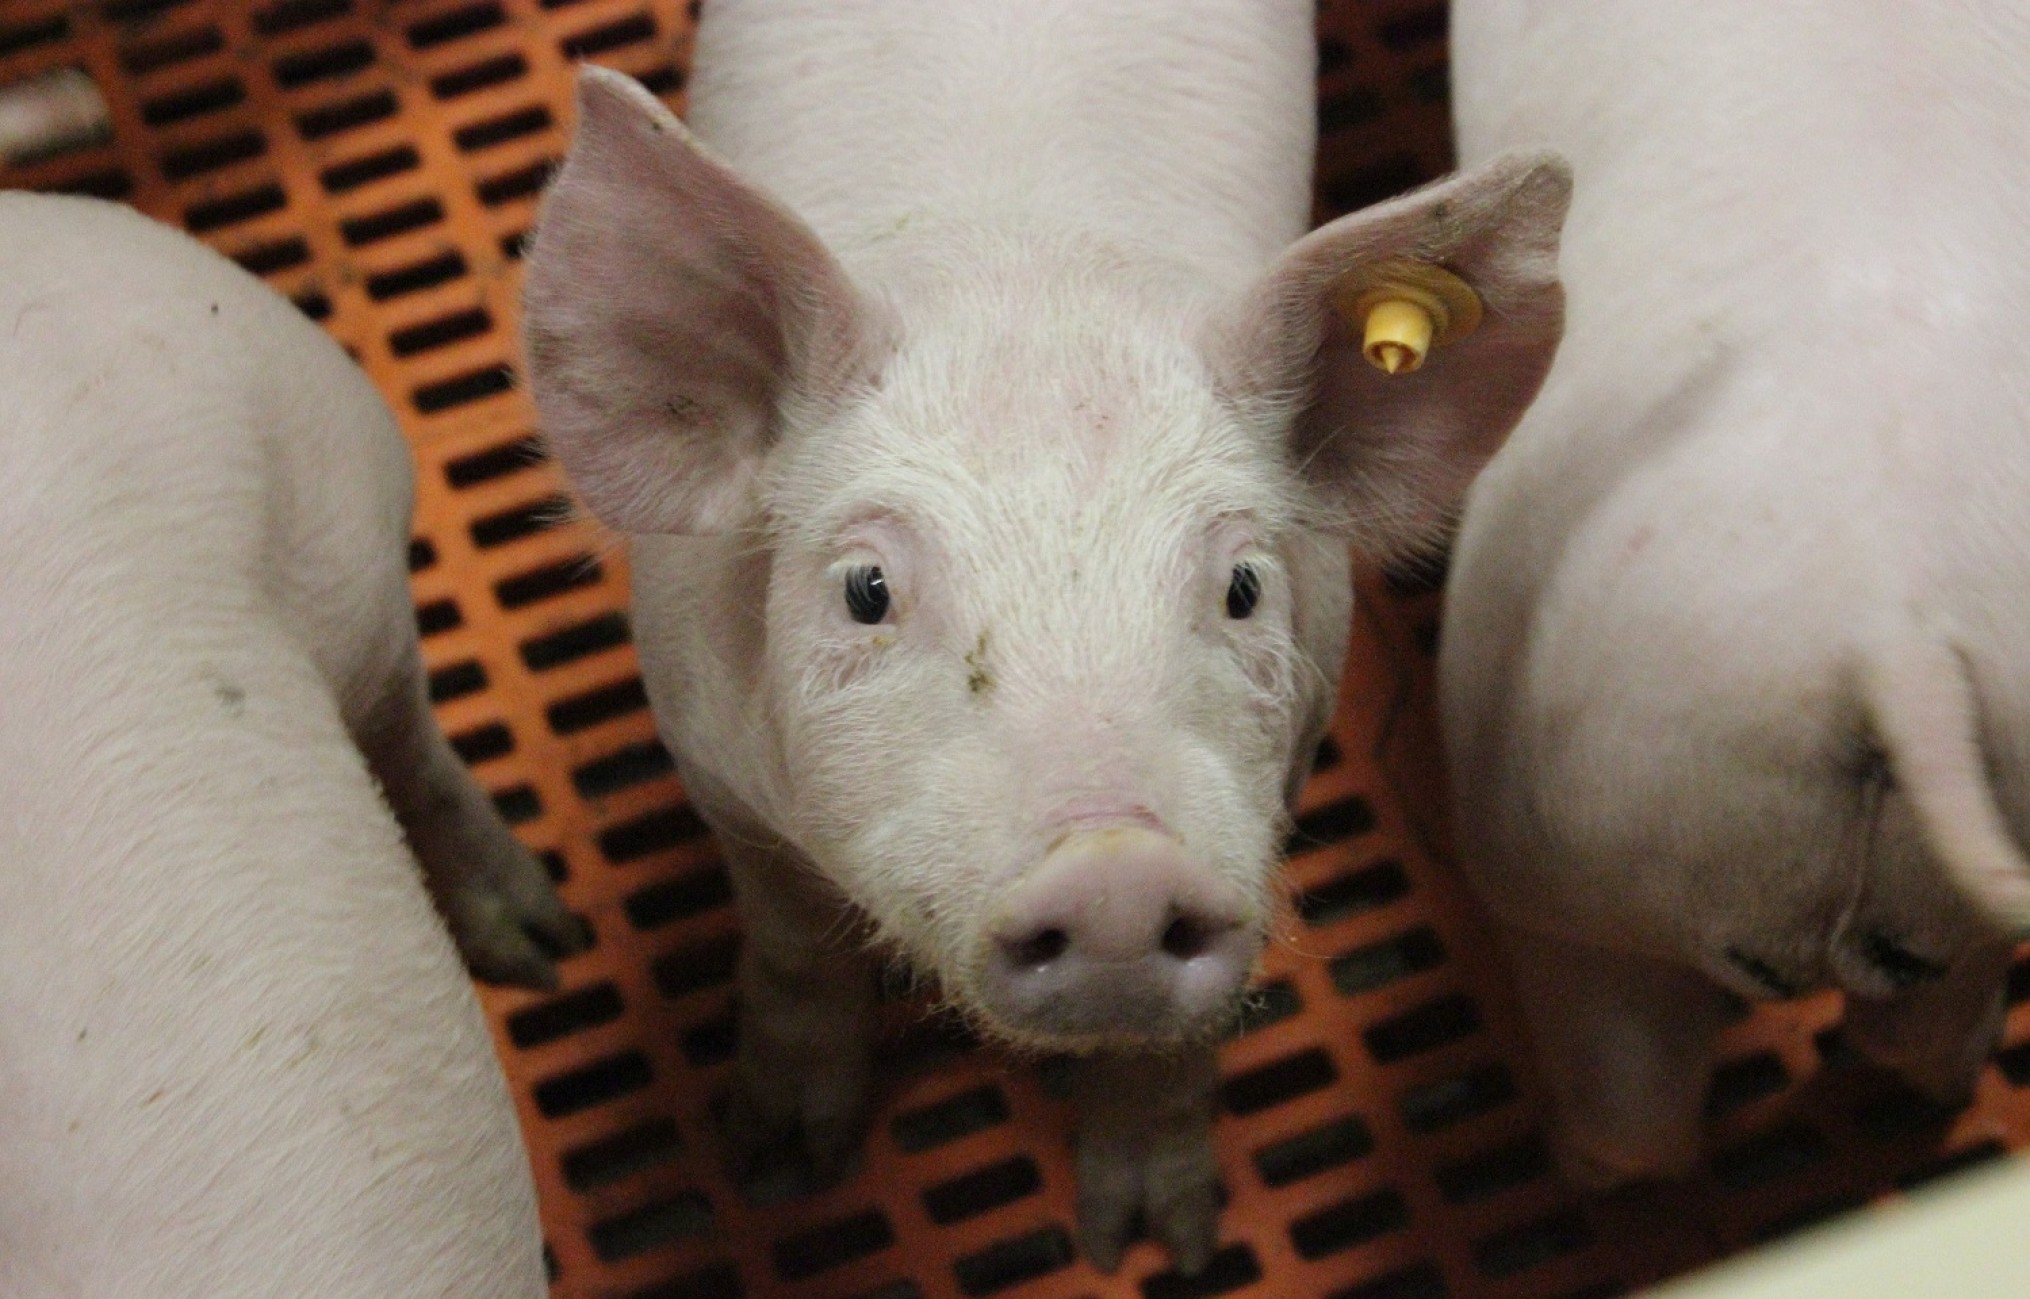 Webinar antibioticagebruik bij varkens (2): hoe verbeteren?